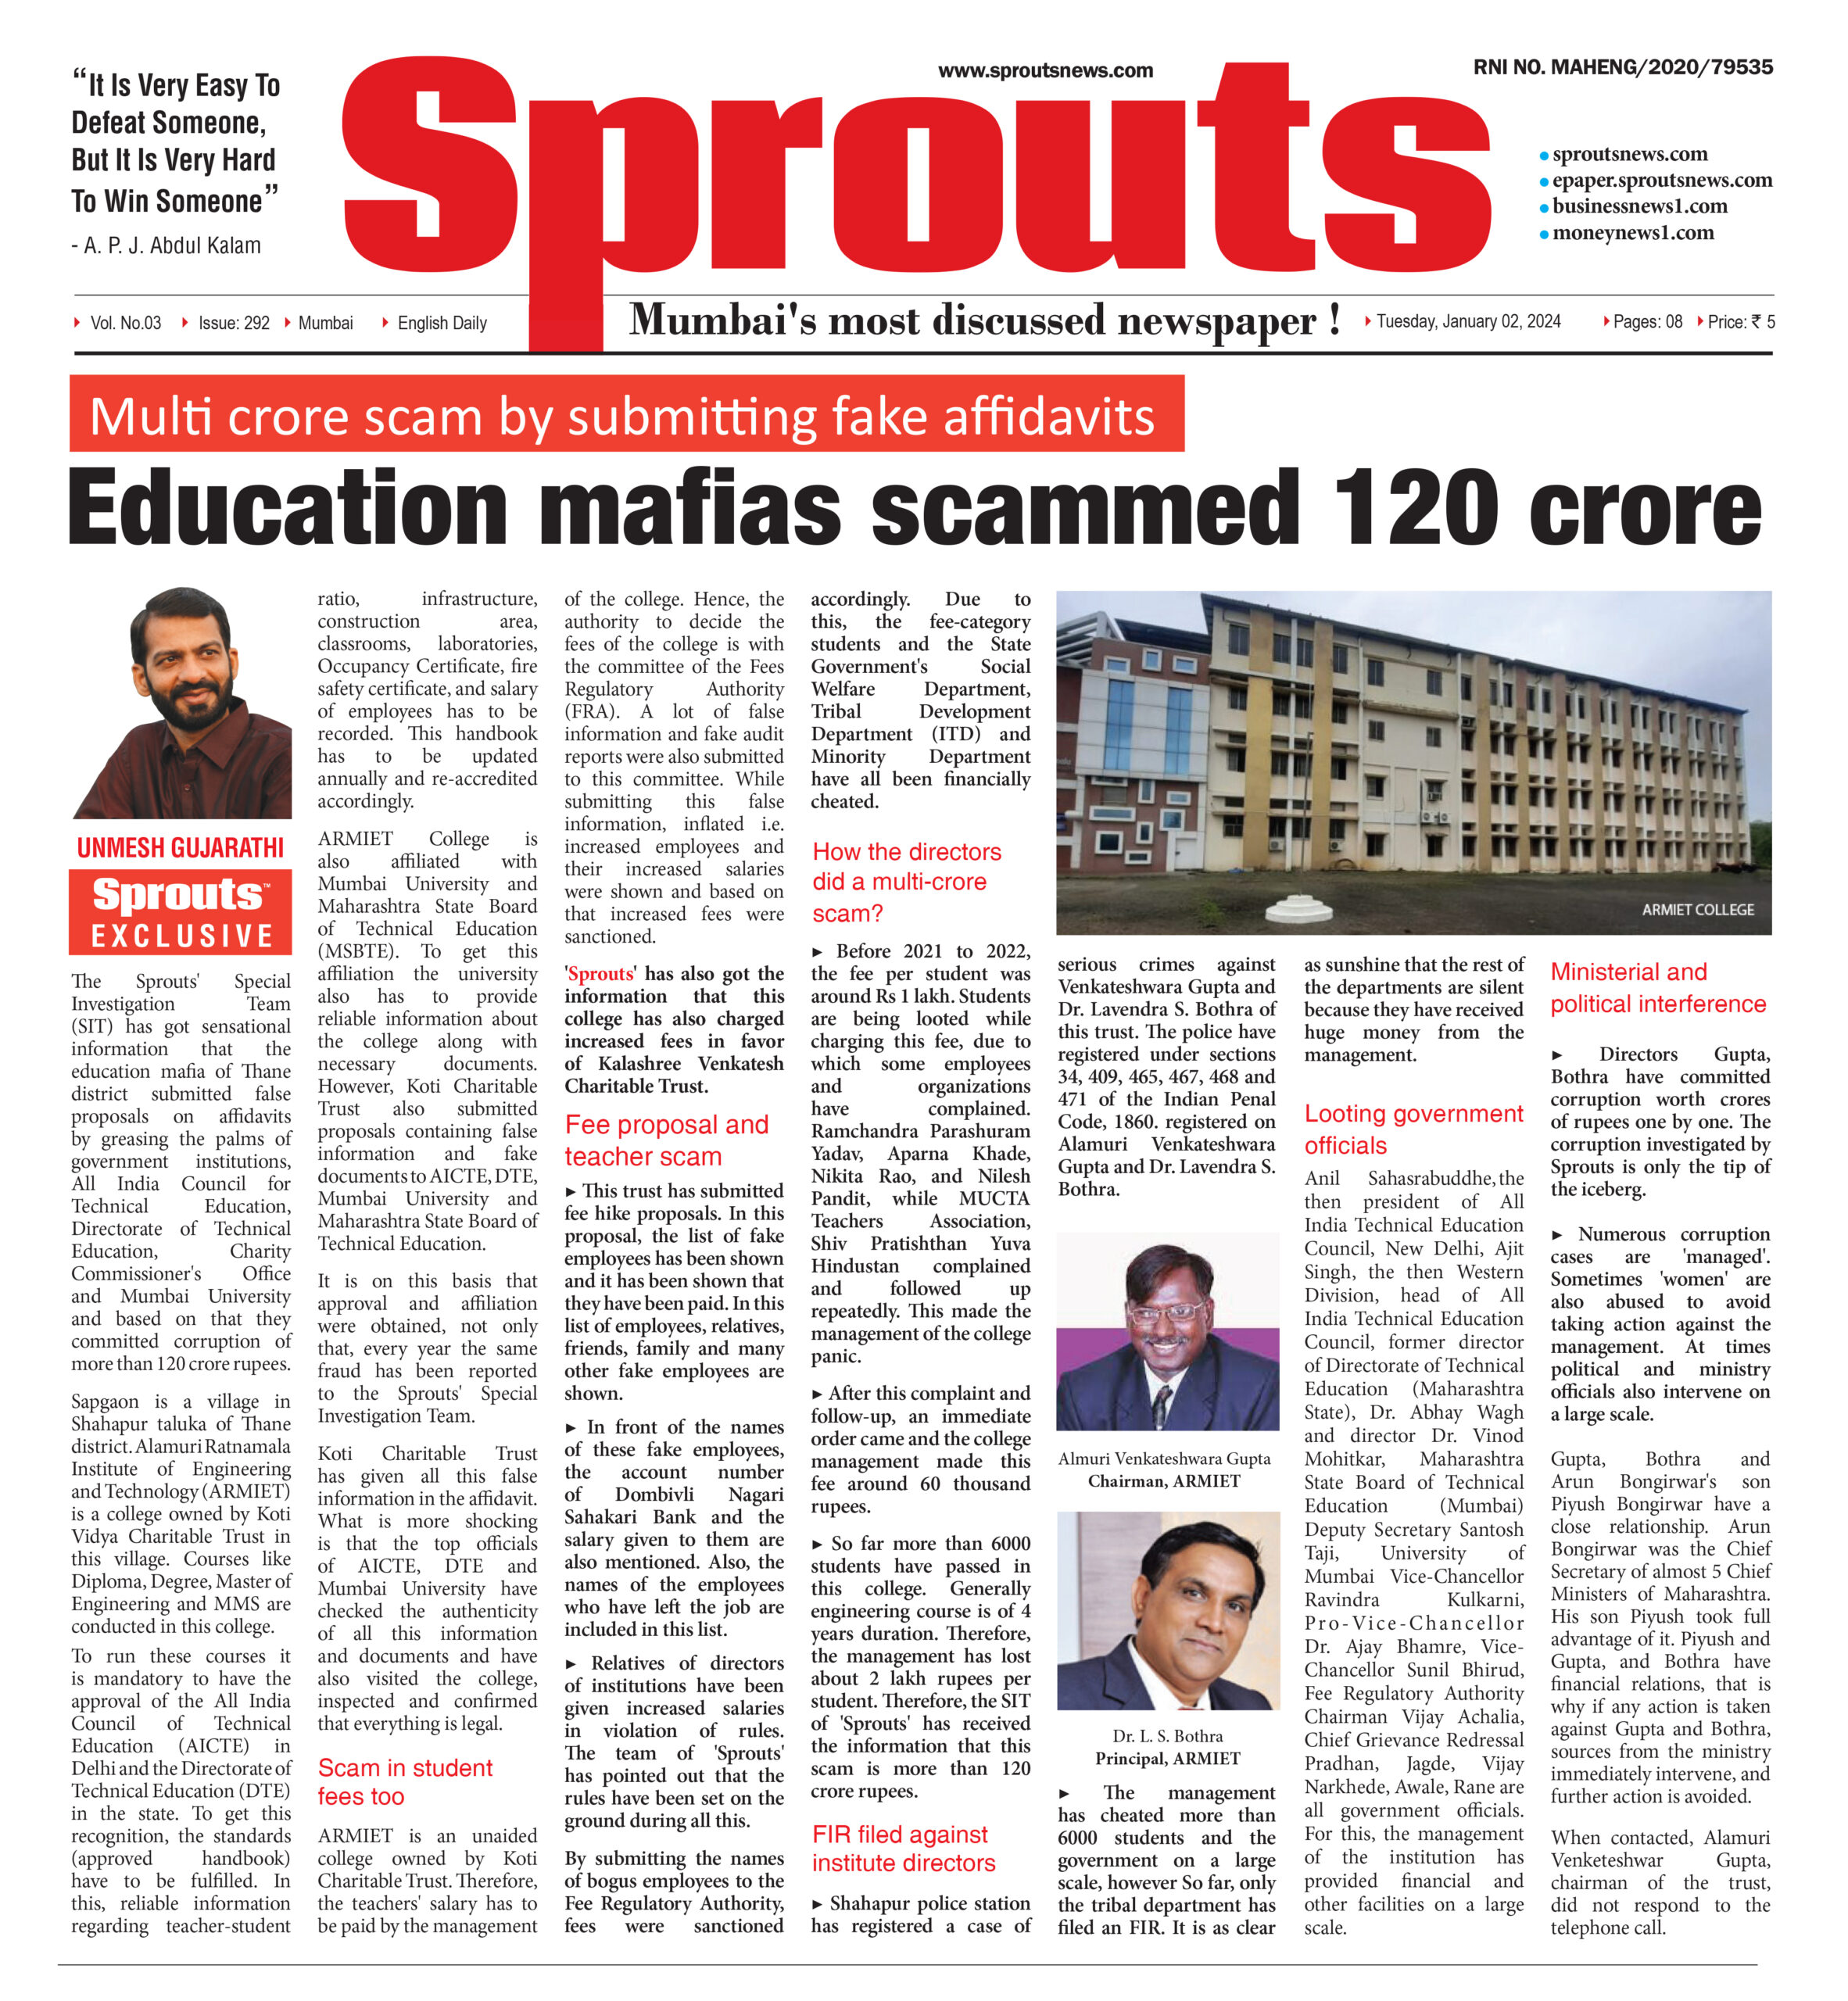 Education mafia involves in a 120 crore scam